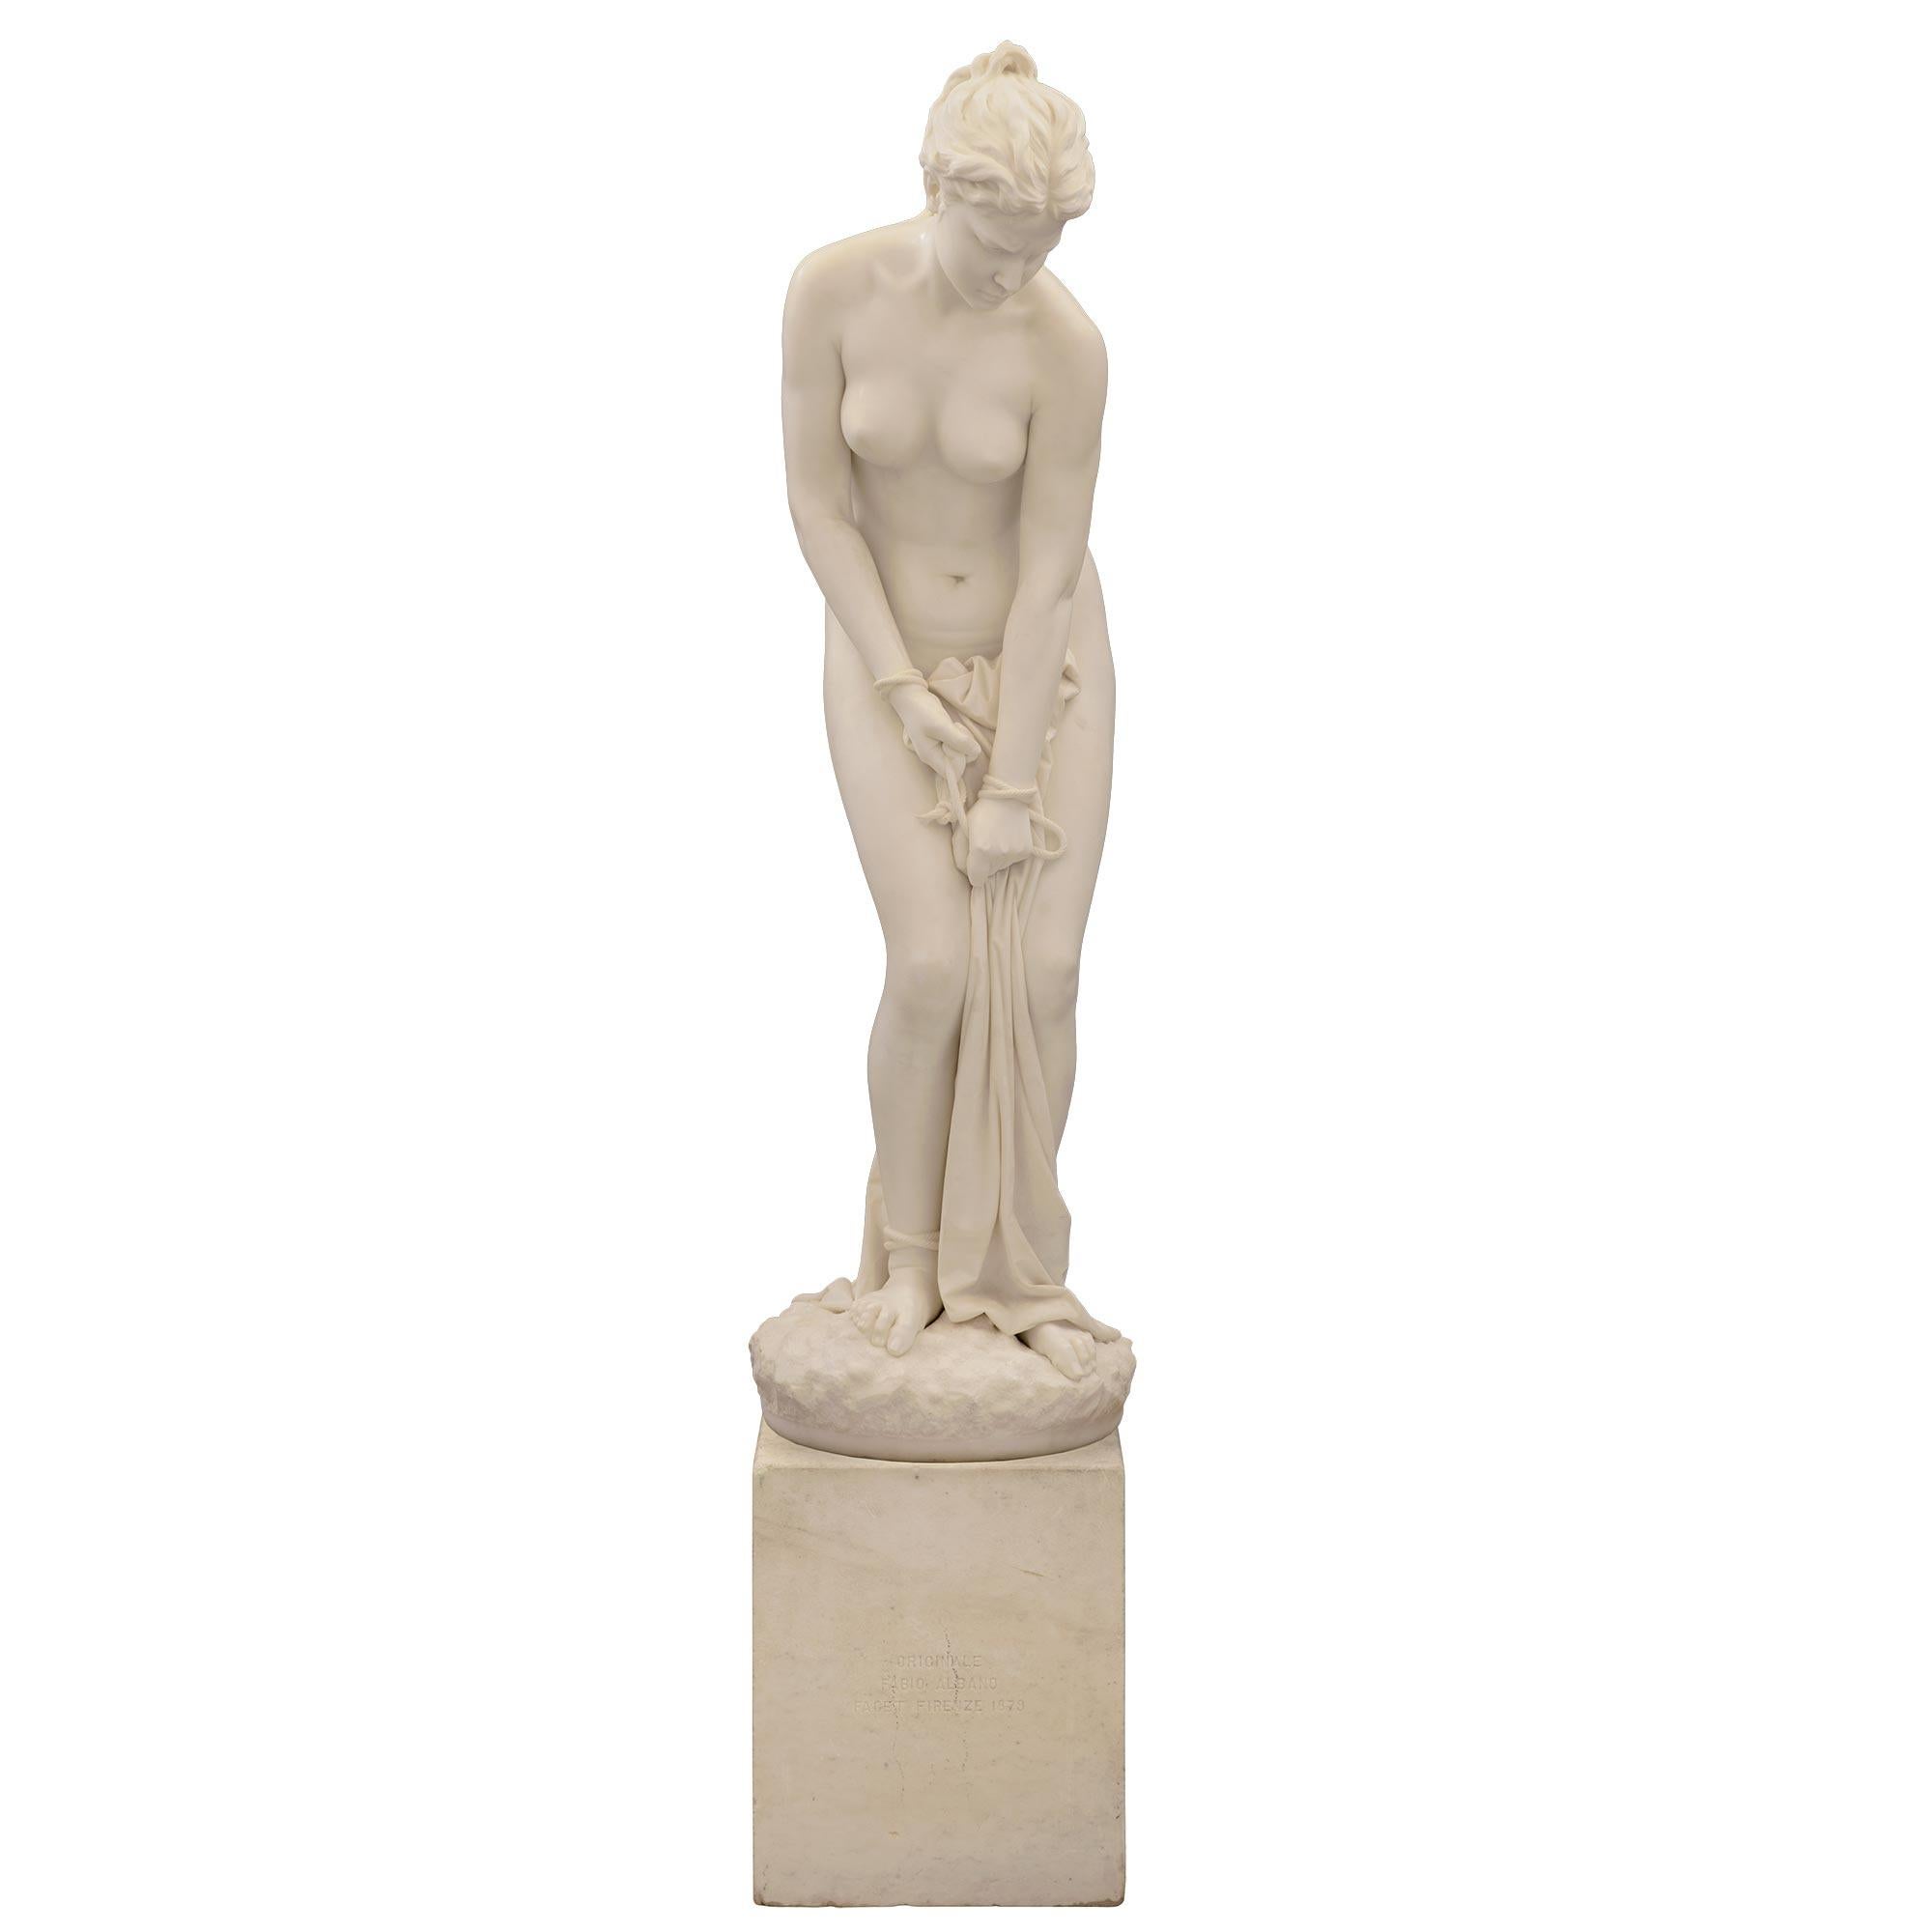 Statue de femme en marbre blanc de Carrare massif du XIXe siècle, de très grande qualité, représentant une femme aux mains et aux pieds liés. La statue, dont le sujet est tout à fait unique, est posée sur sa base carrée d'origine, avec l'inscription